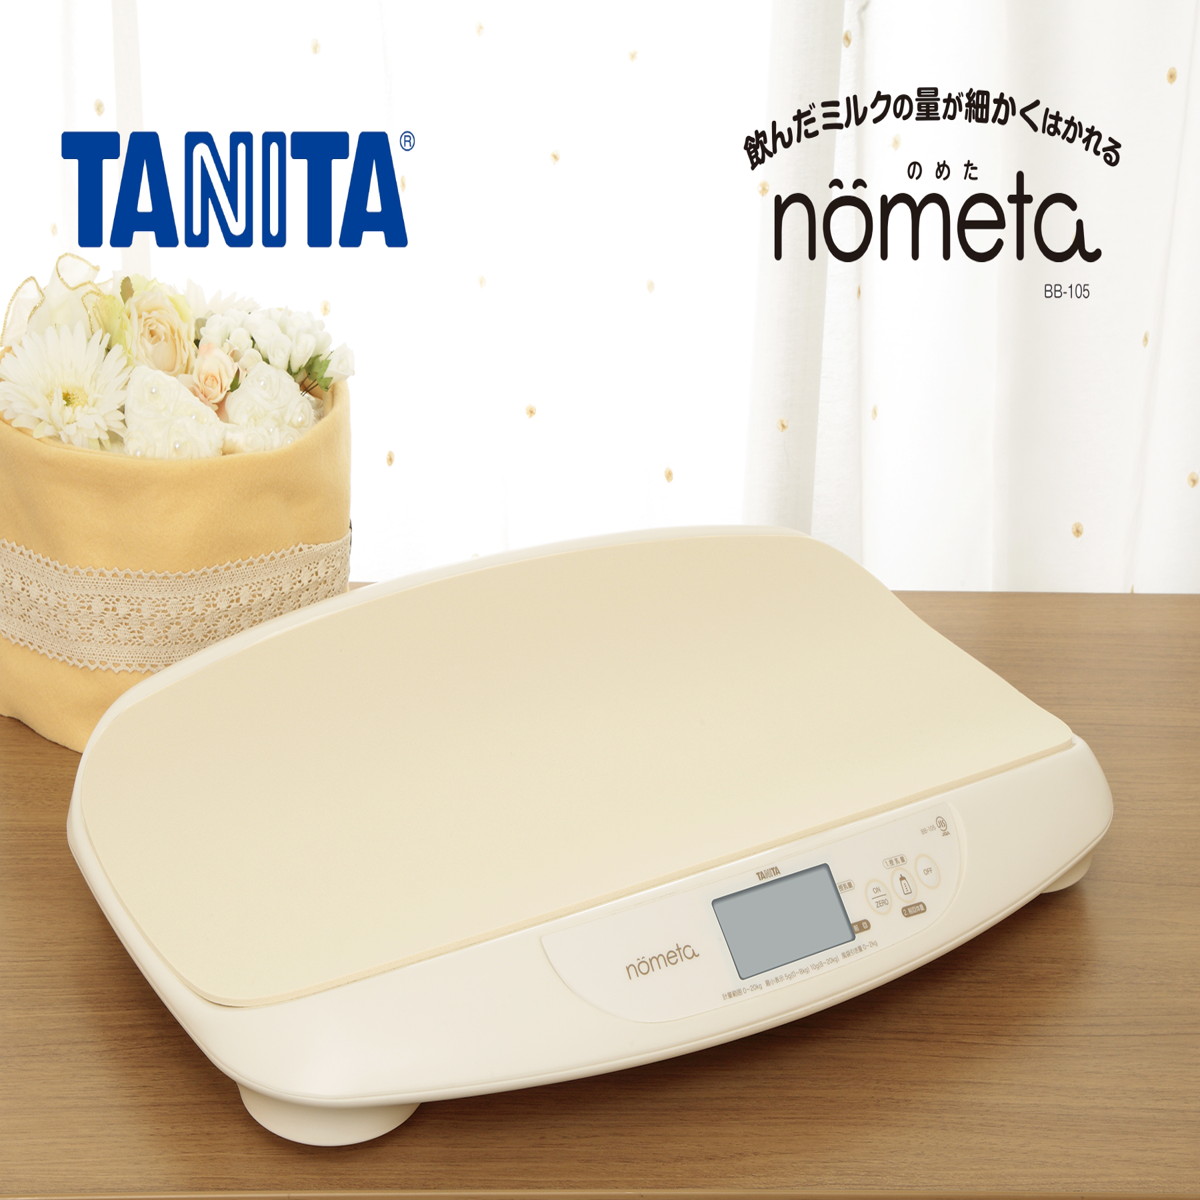 TANITA 体重計 ベビースケール アイボリー nometa 授乳量機能付き 飲んだミルクの量が1g単位でわかる やわらかマット付属　 BB-105-IV